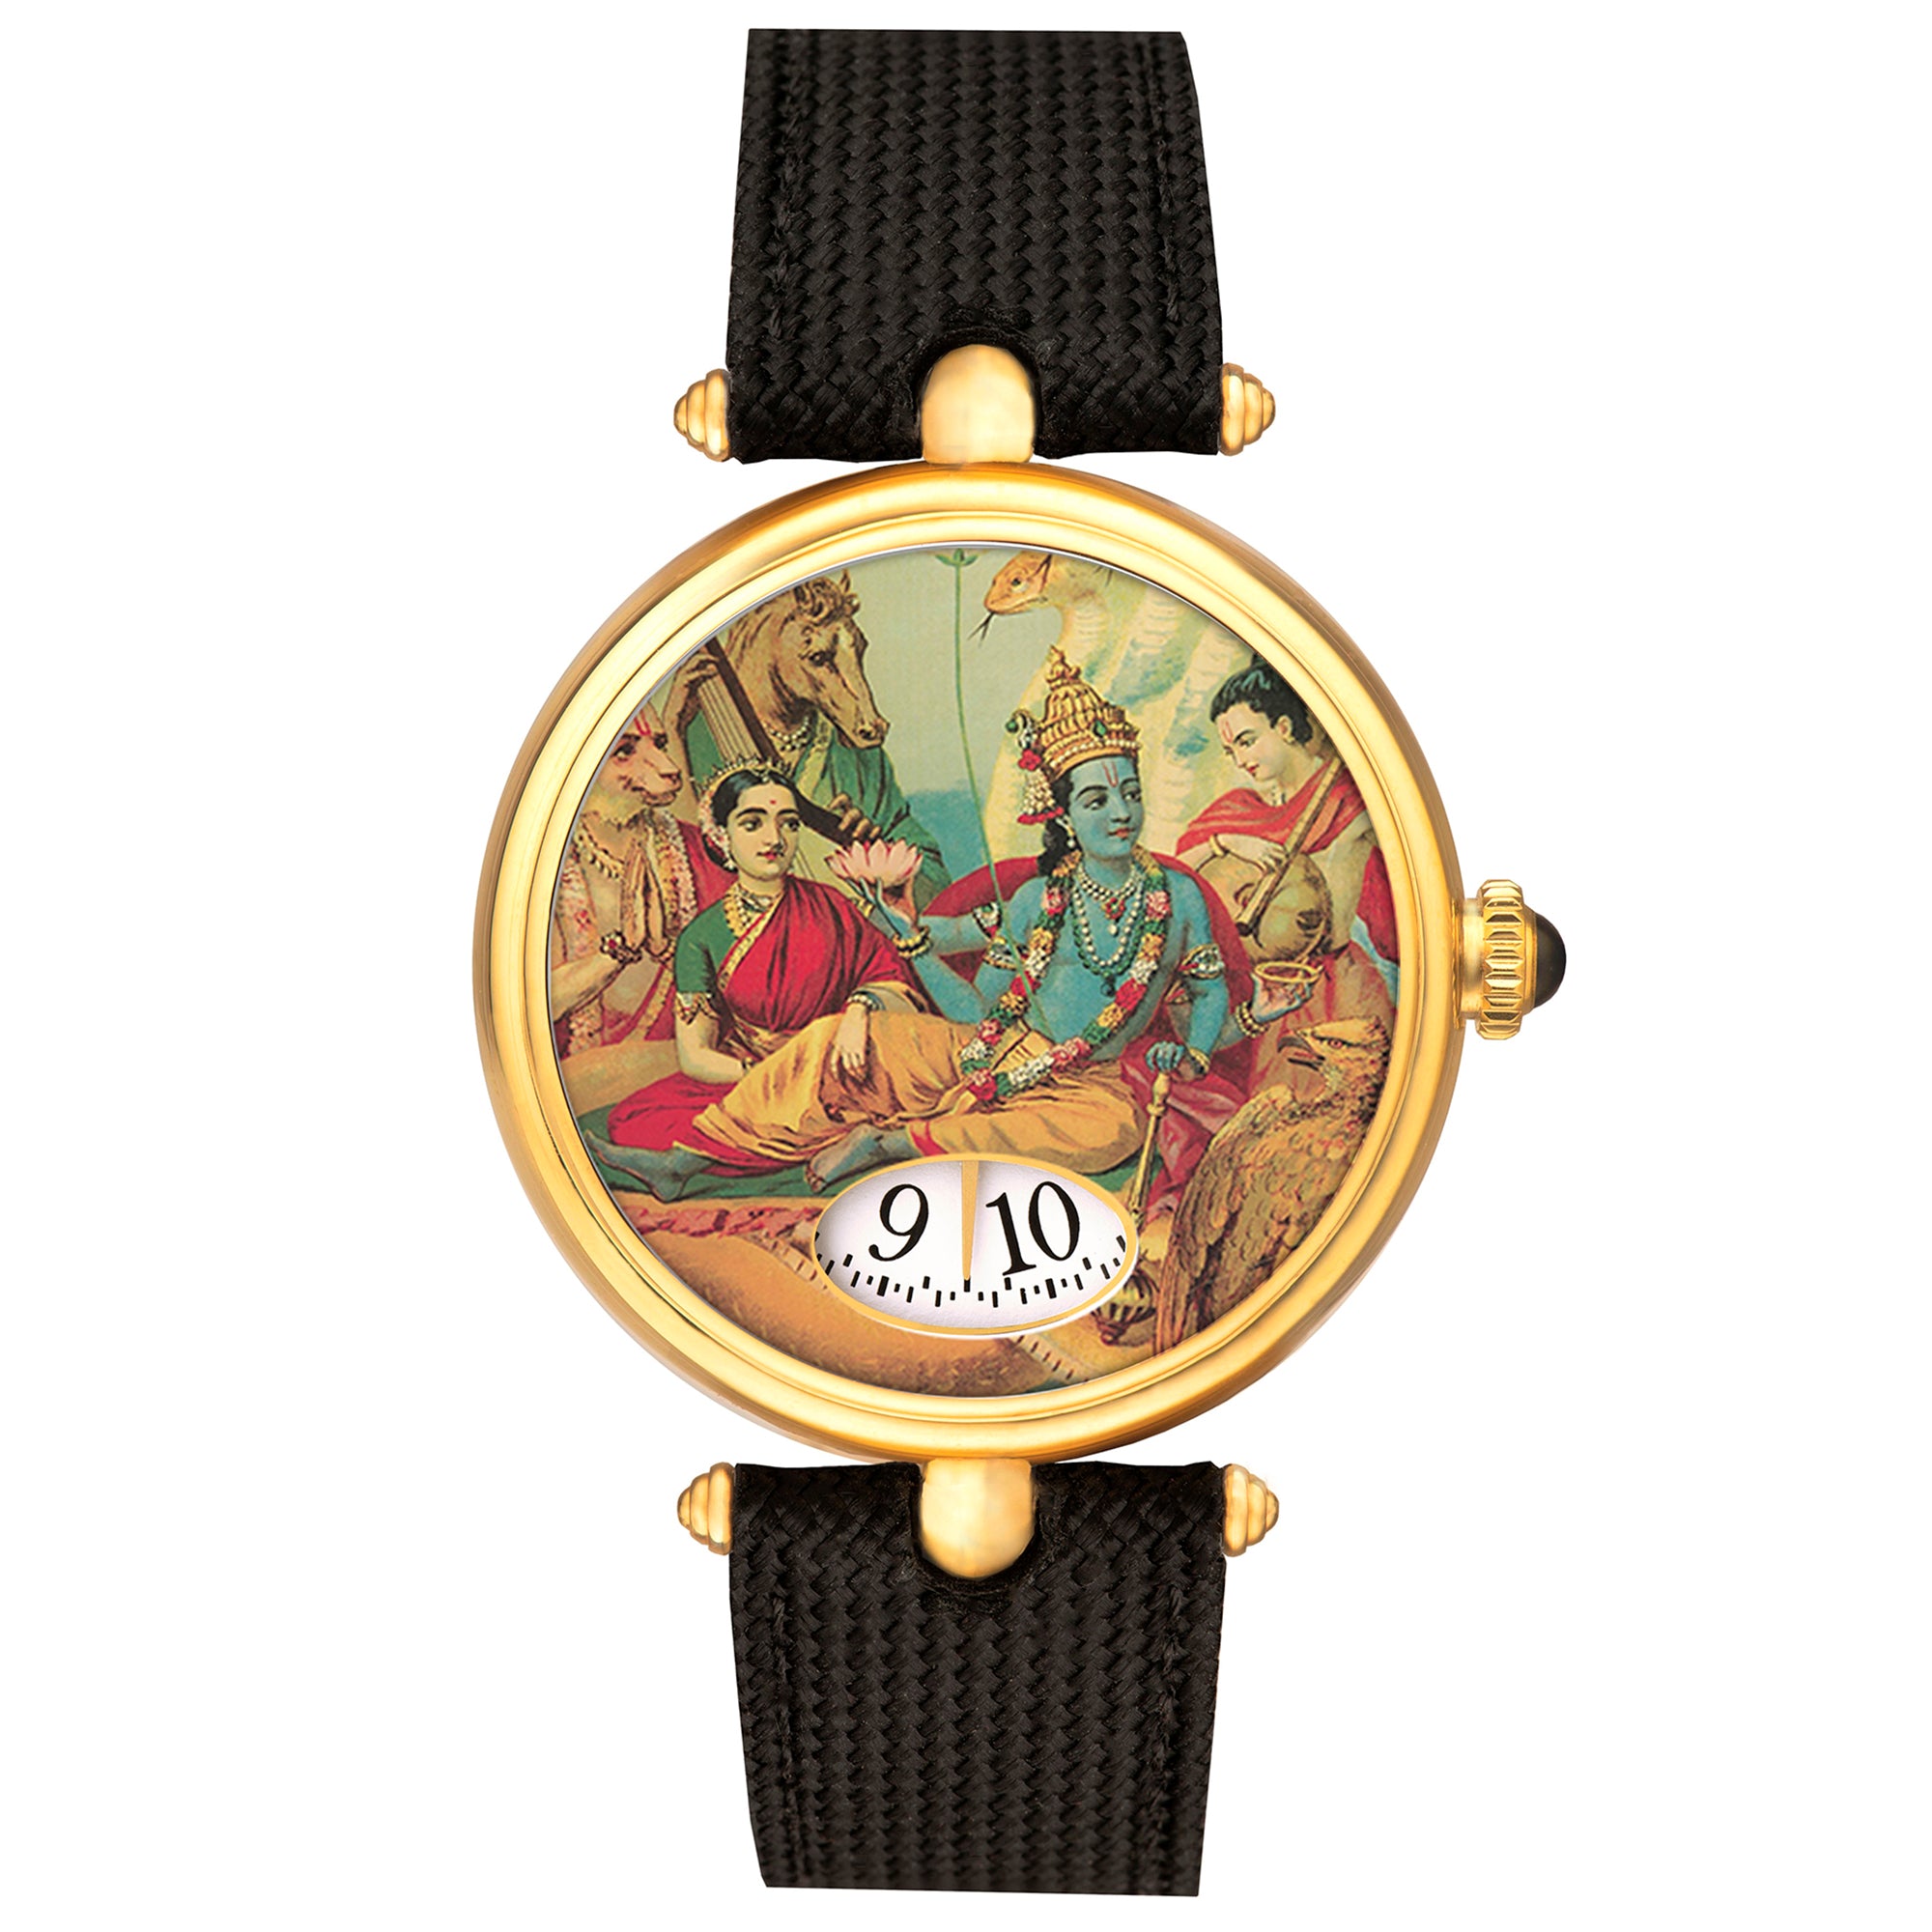 Lord Vishnu Automatic Watch